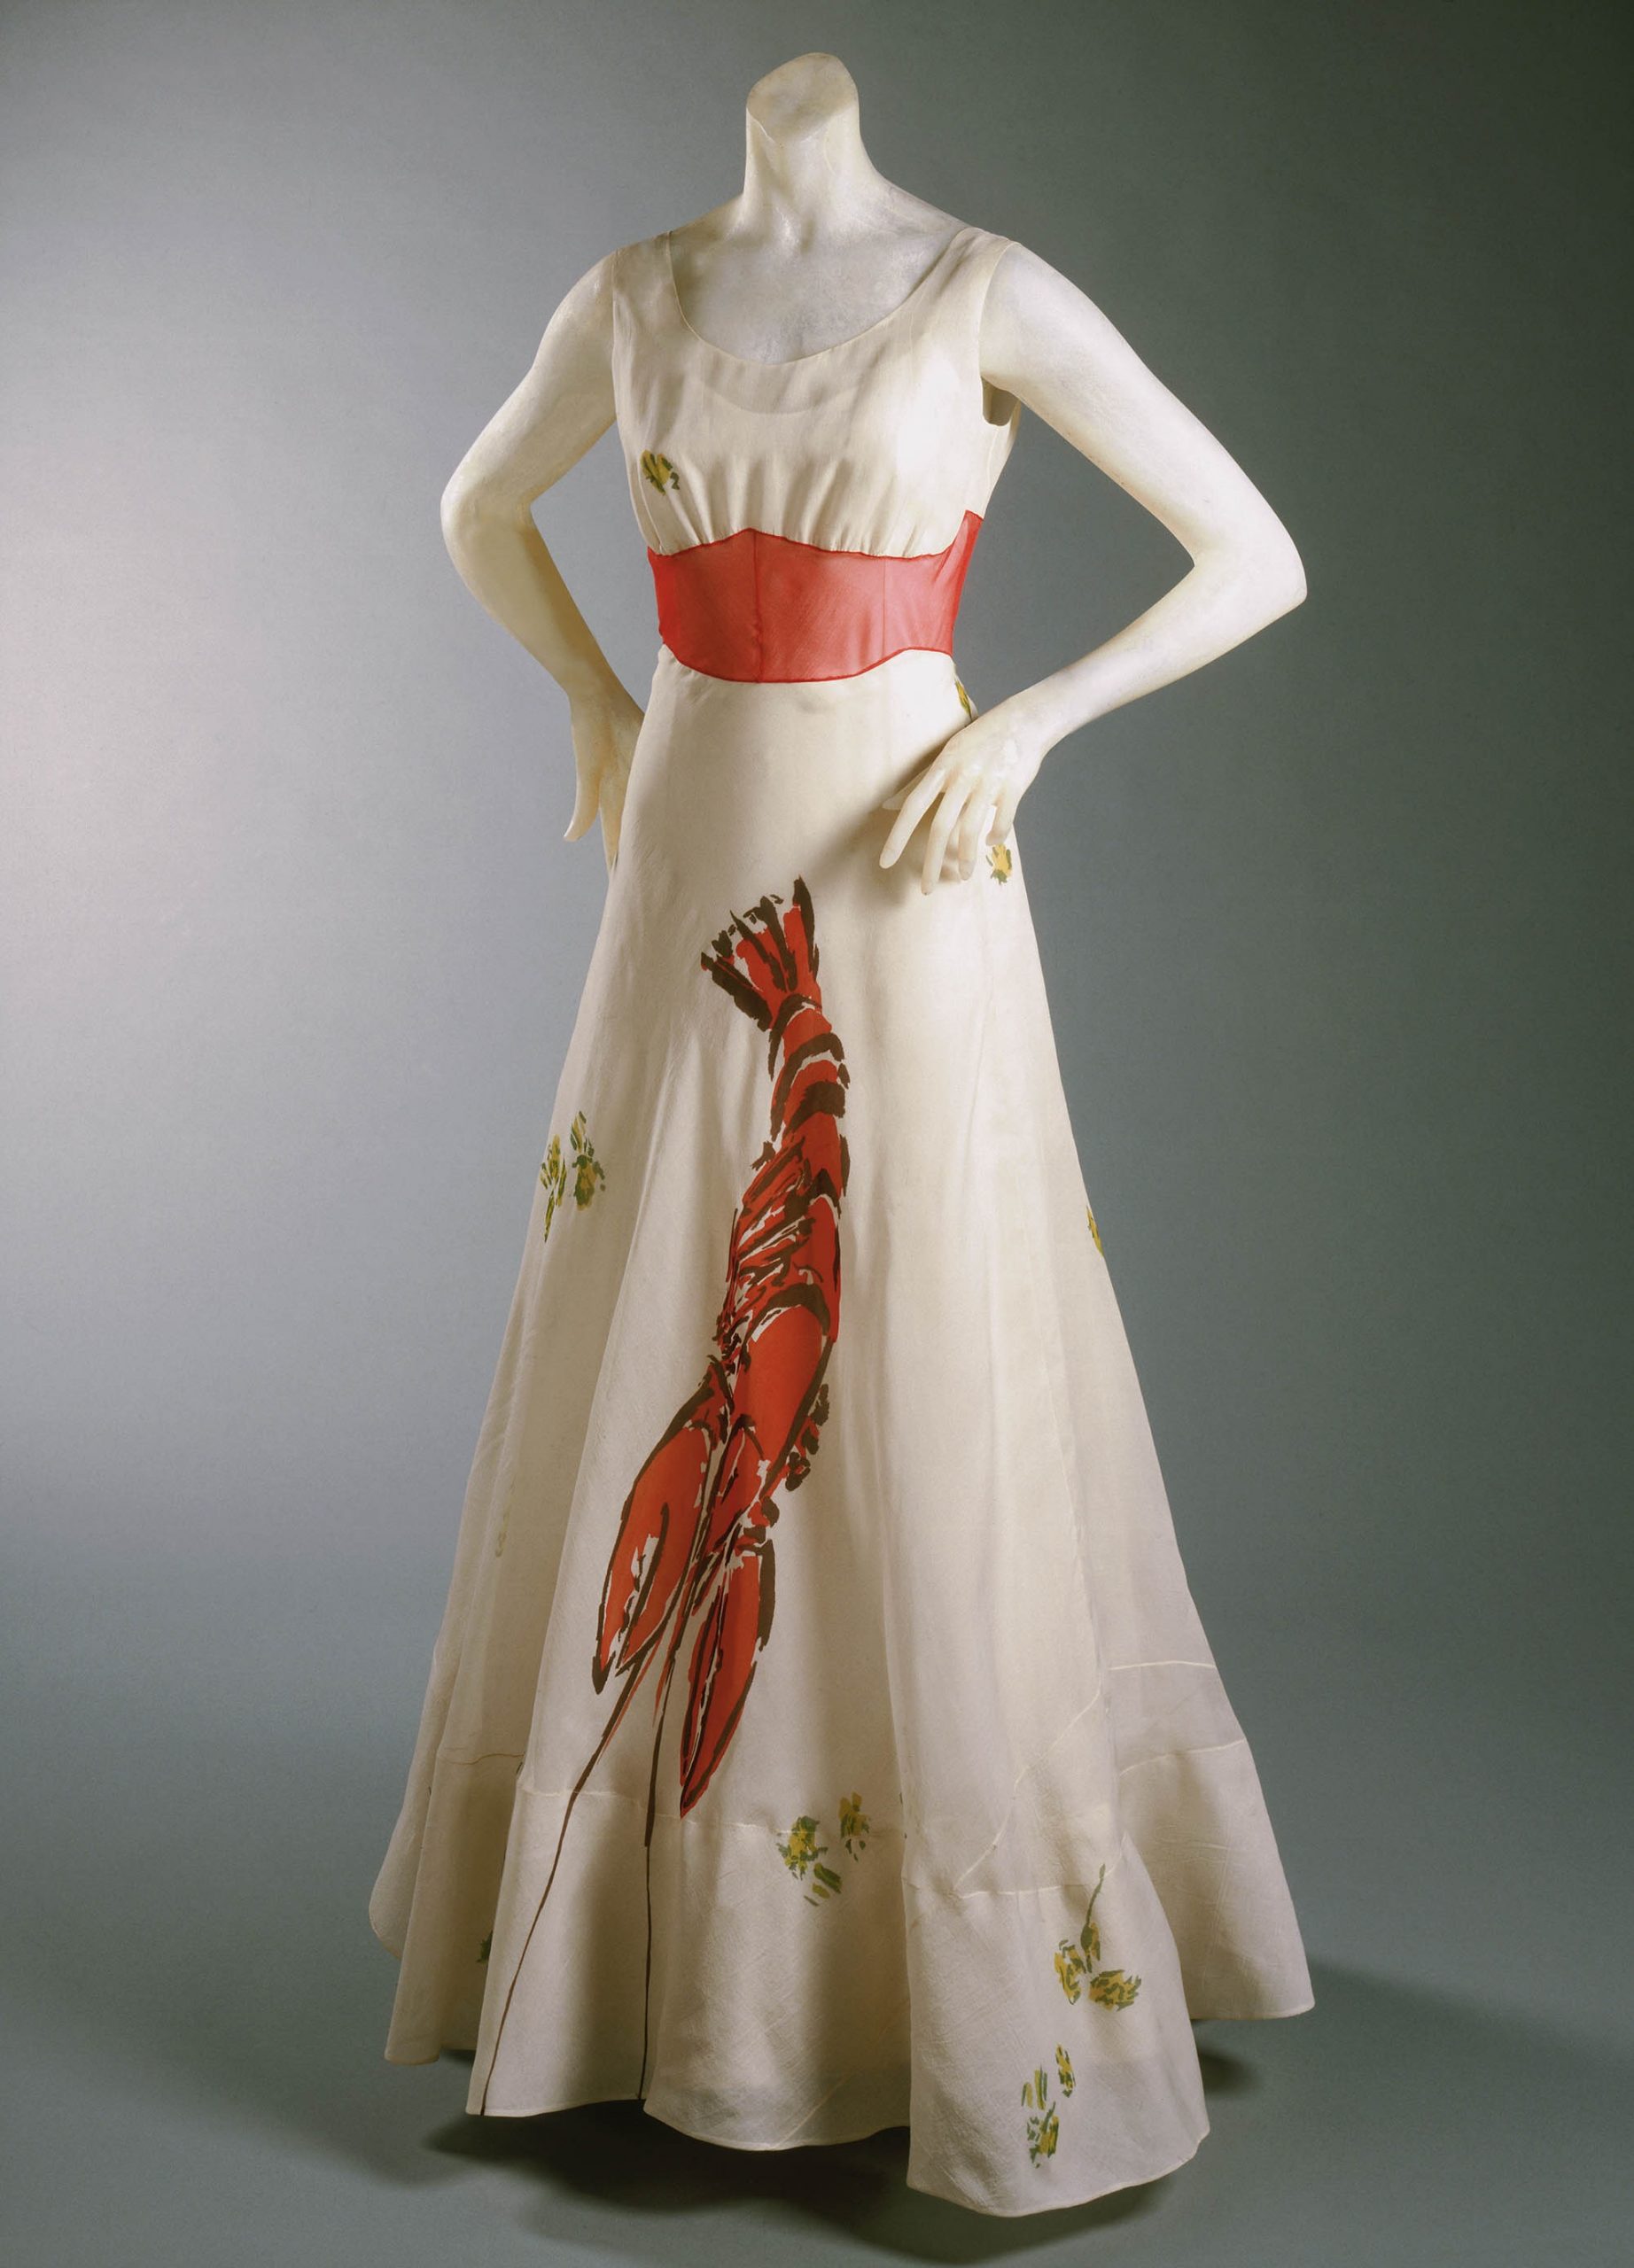 Đầm dạ hội Elsa Schiaparelli phối hợp thiết kế cùng Salvador Dalí 